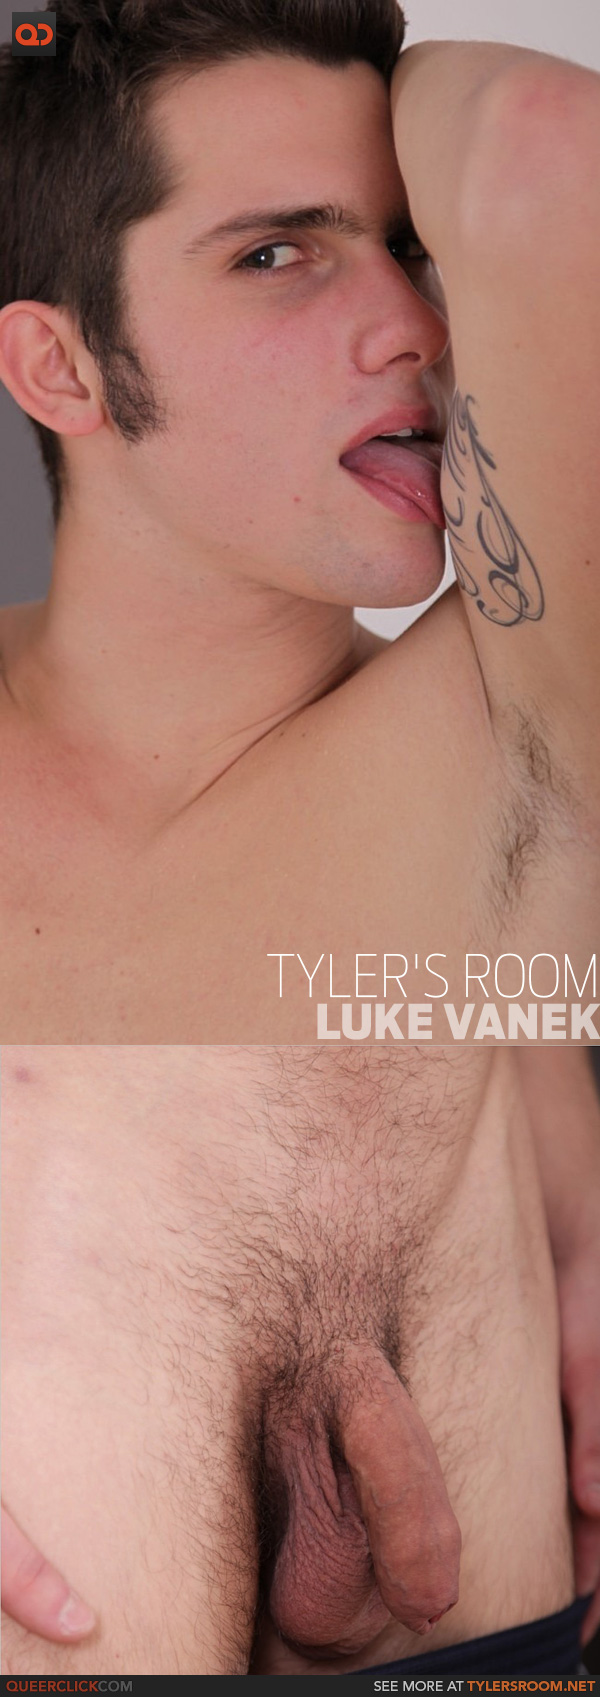 Tyler's Room: Luke Vanek